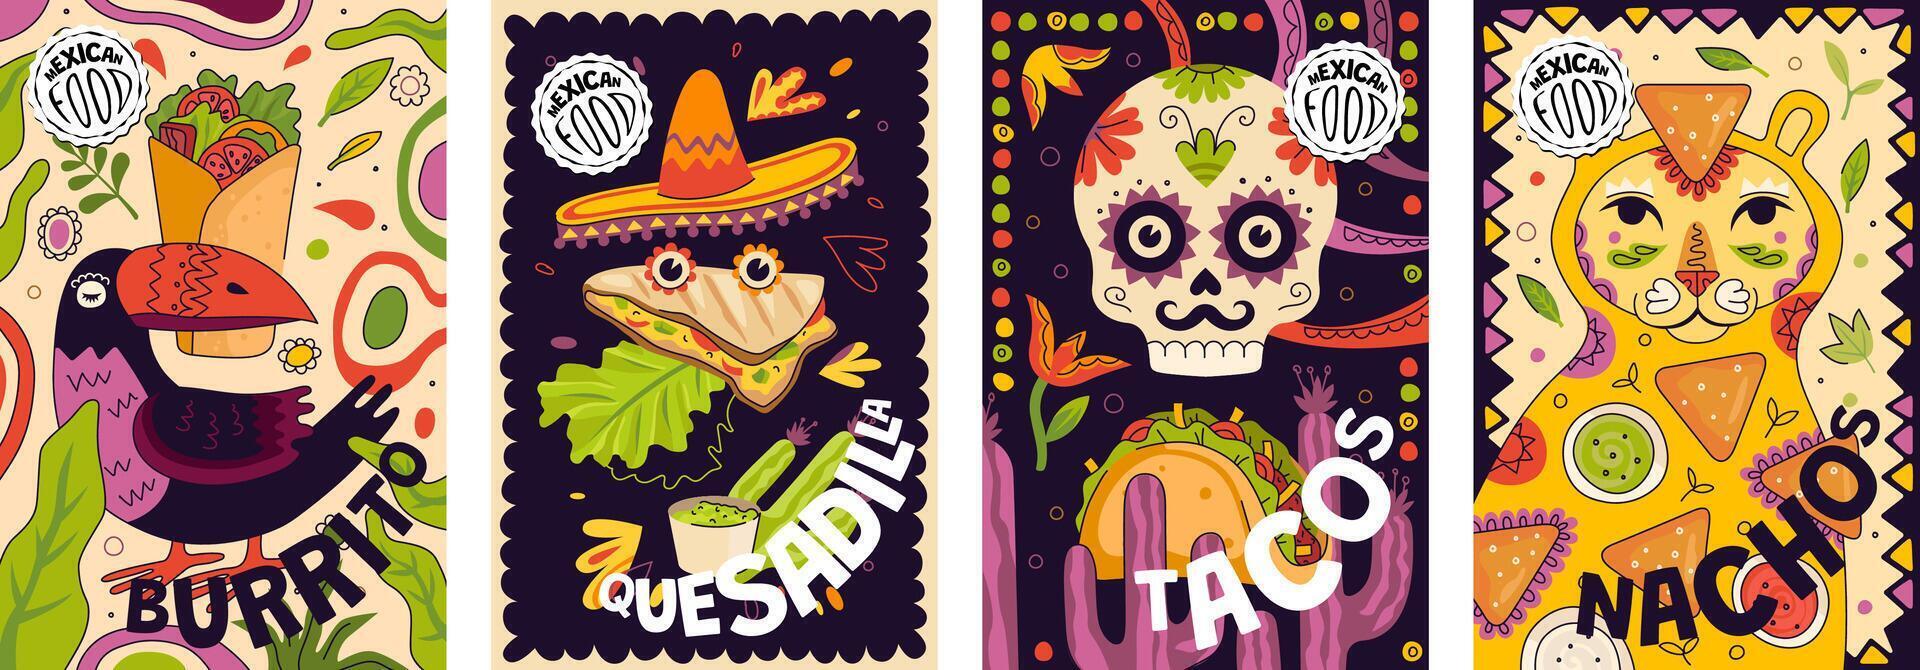 Mexikaner schnell Essen Promo Poster Design Satz. Mexiko Küche Banner Burrito und Nacho. Latein amerikanisch Gericht Plakat Nachos und Taco. Restaurant und Restaurant Werbung Vektor eps drucken Quesadilla und Tacos